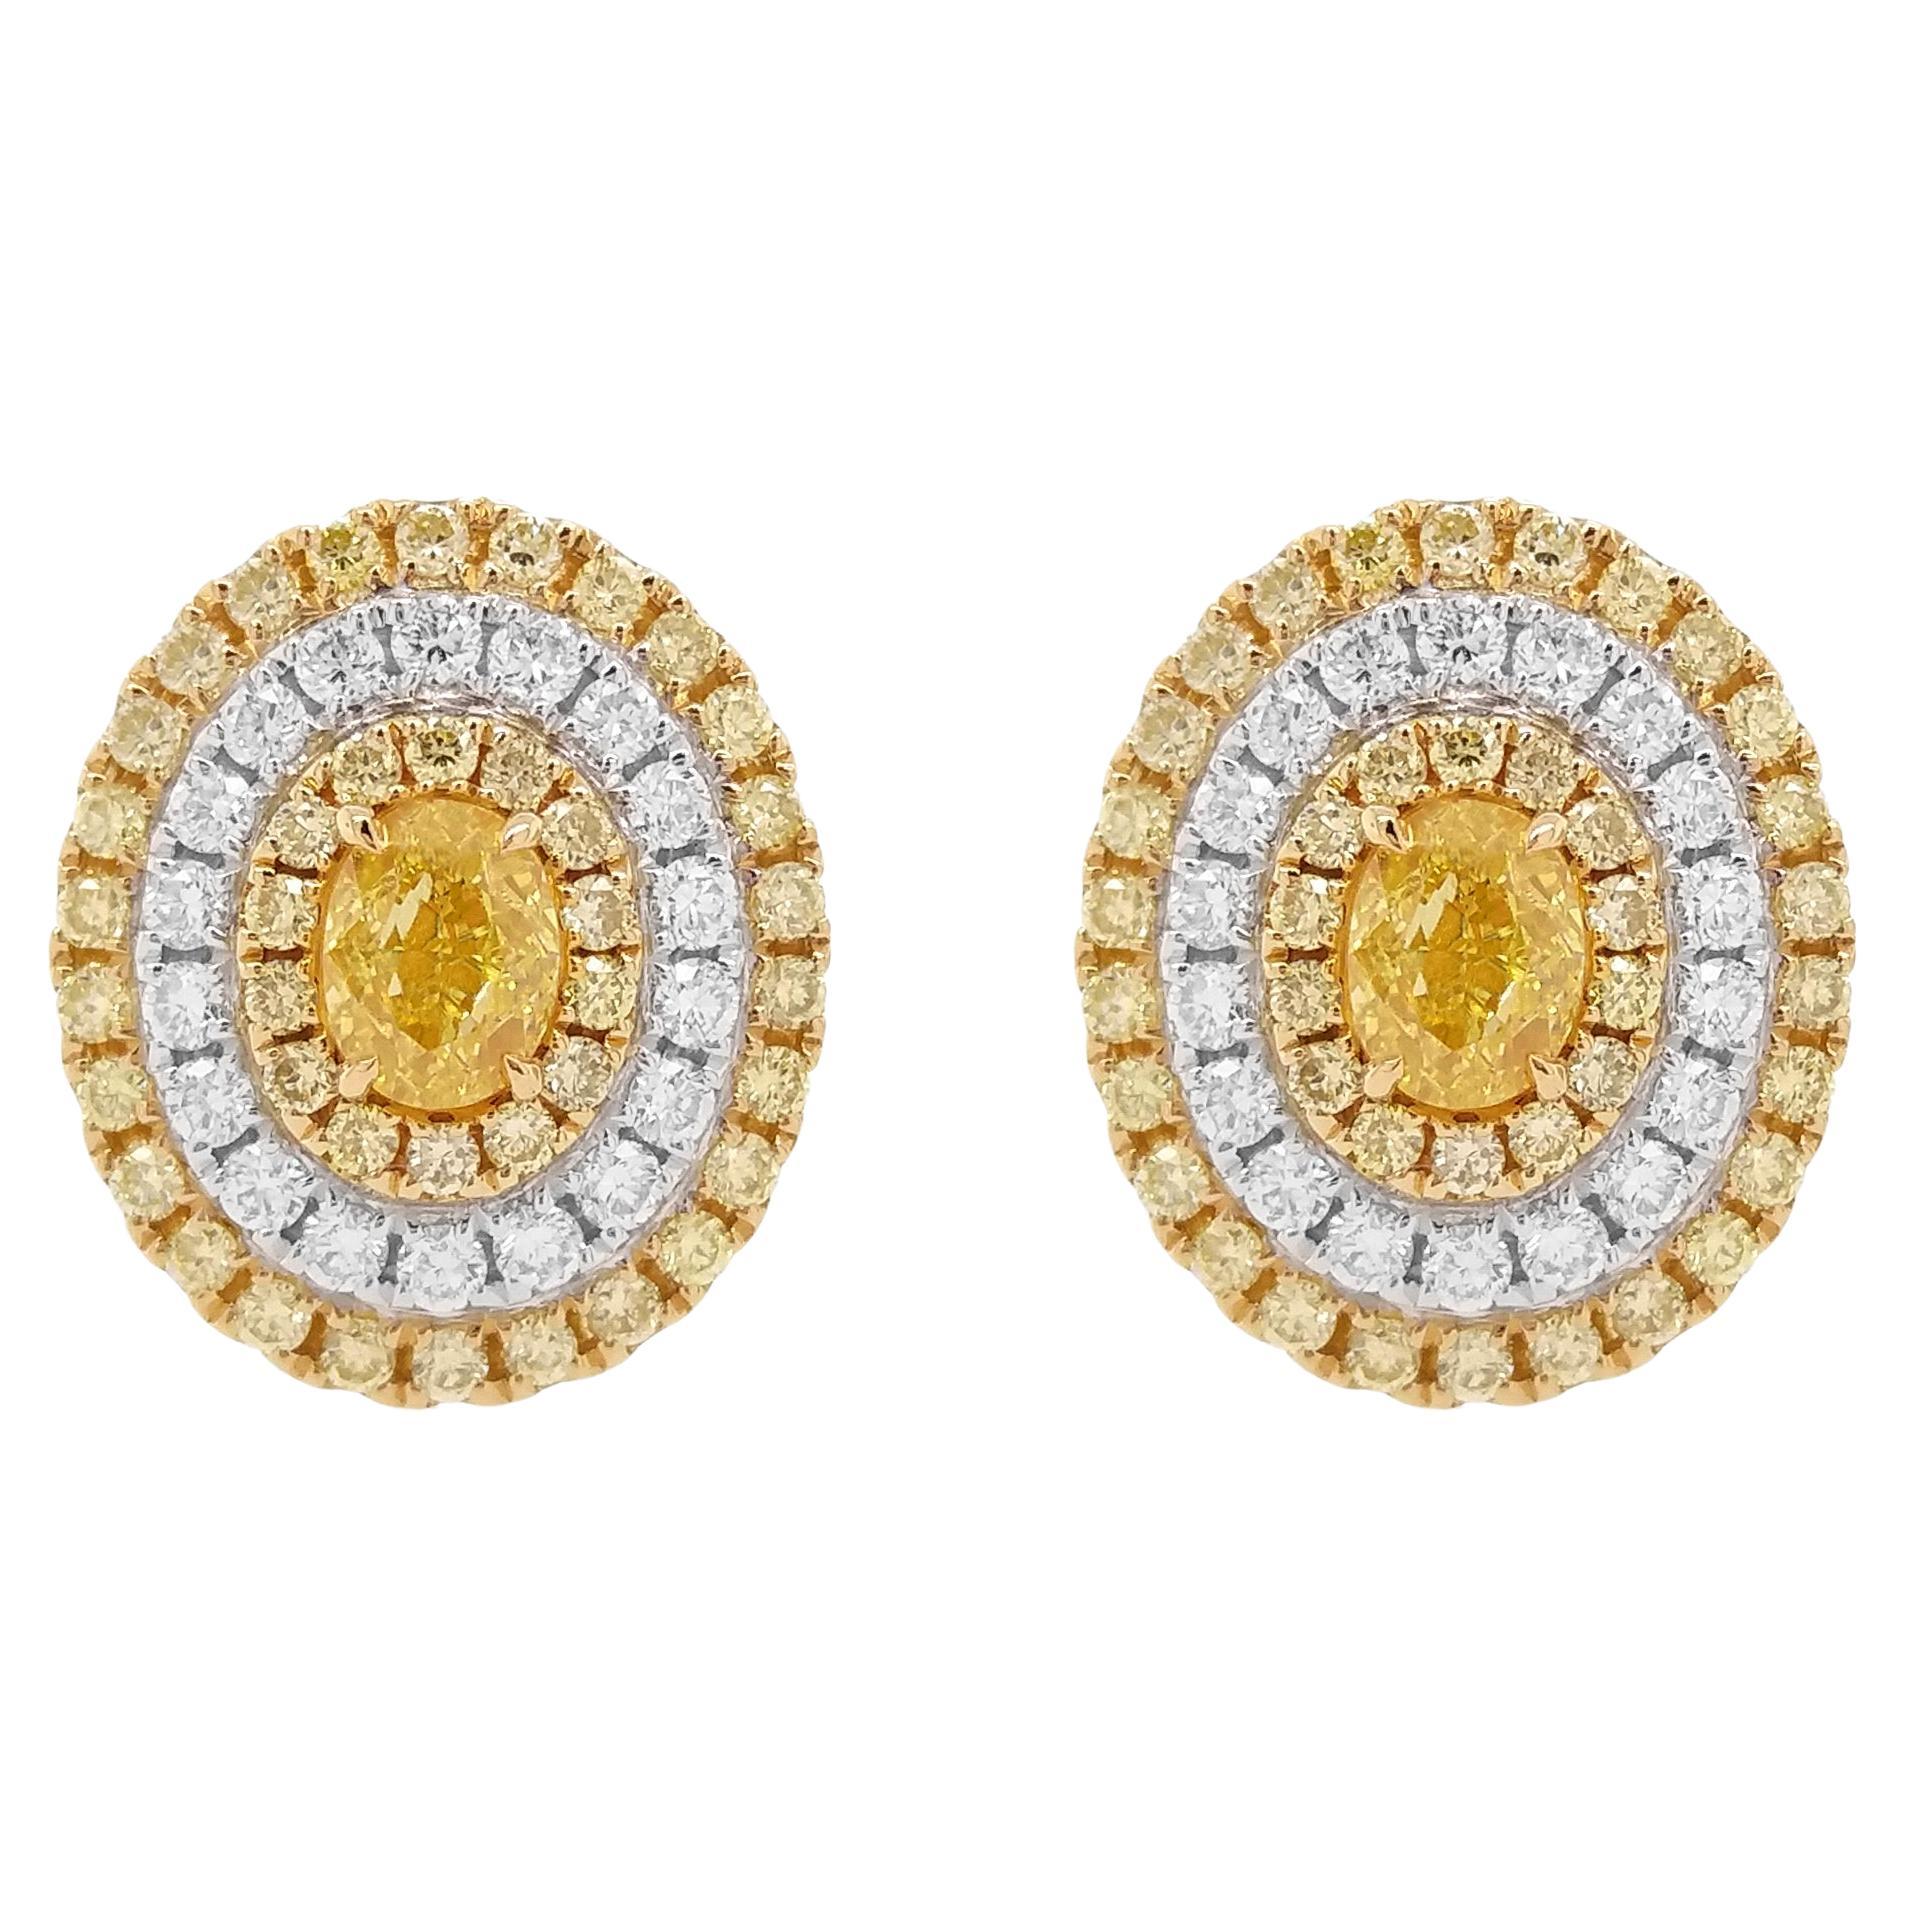 Certified Yellow Diamond 18K Gold Stud Earrings